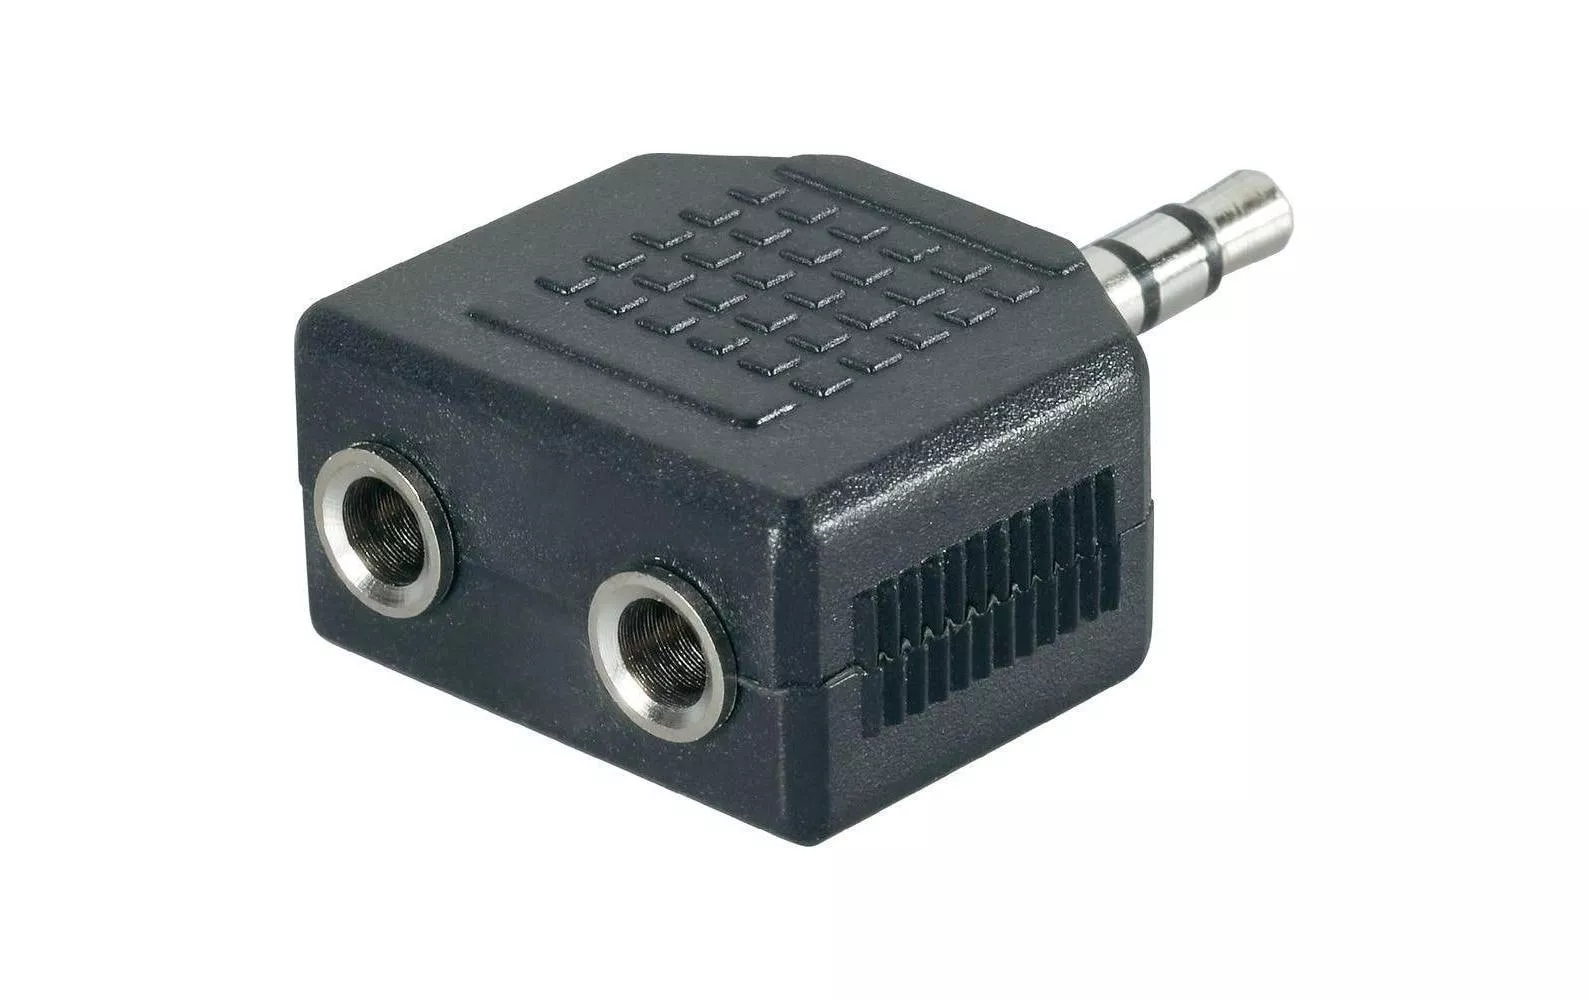 Audio-Adapter Klinke 3.5 mm, male - Klinke 3.5 mm, female